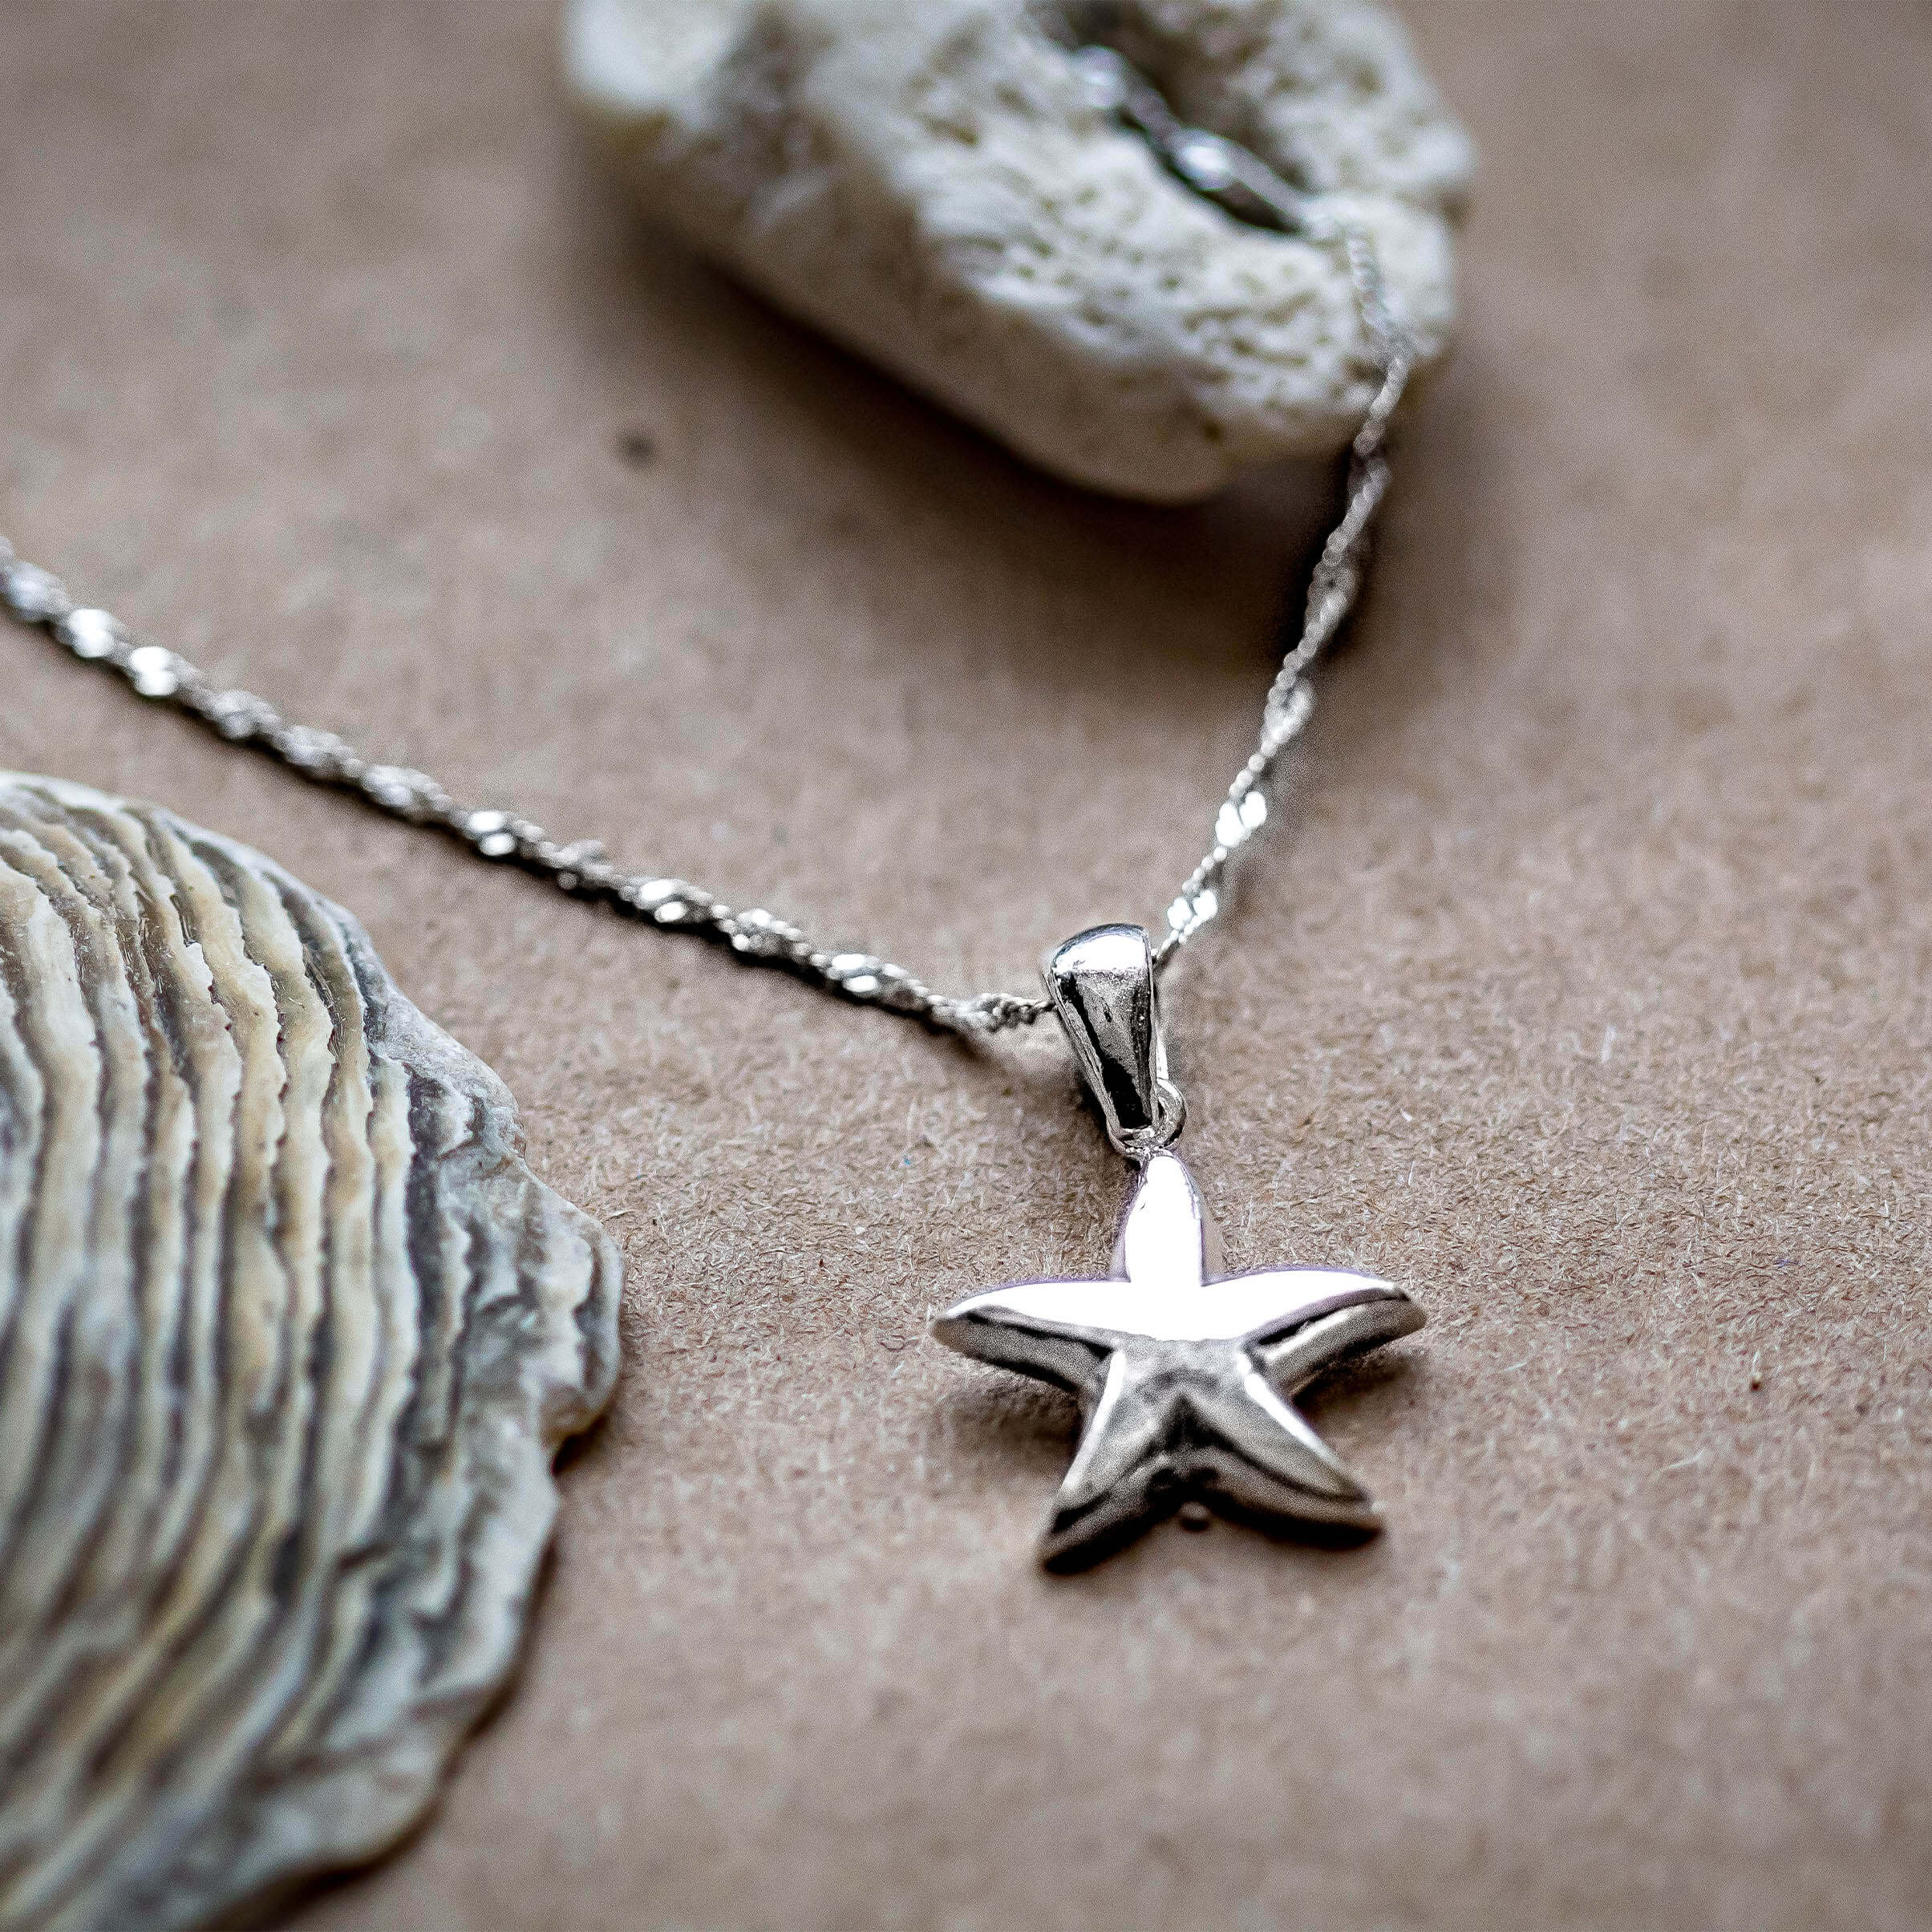 Cordelia Silver Starfish Necklace - Wisteria London